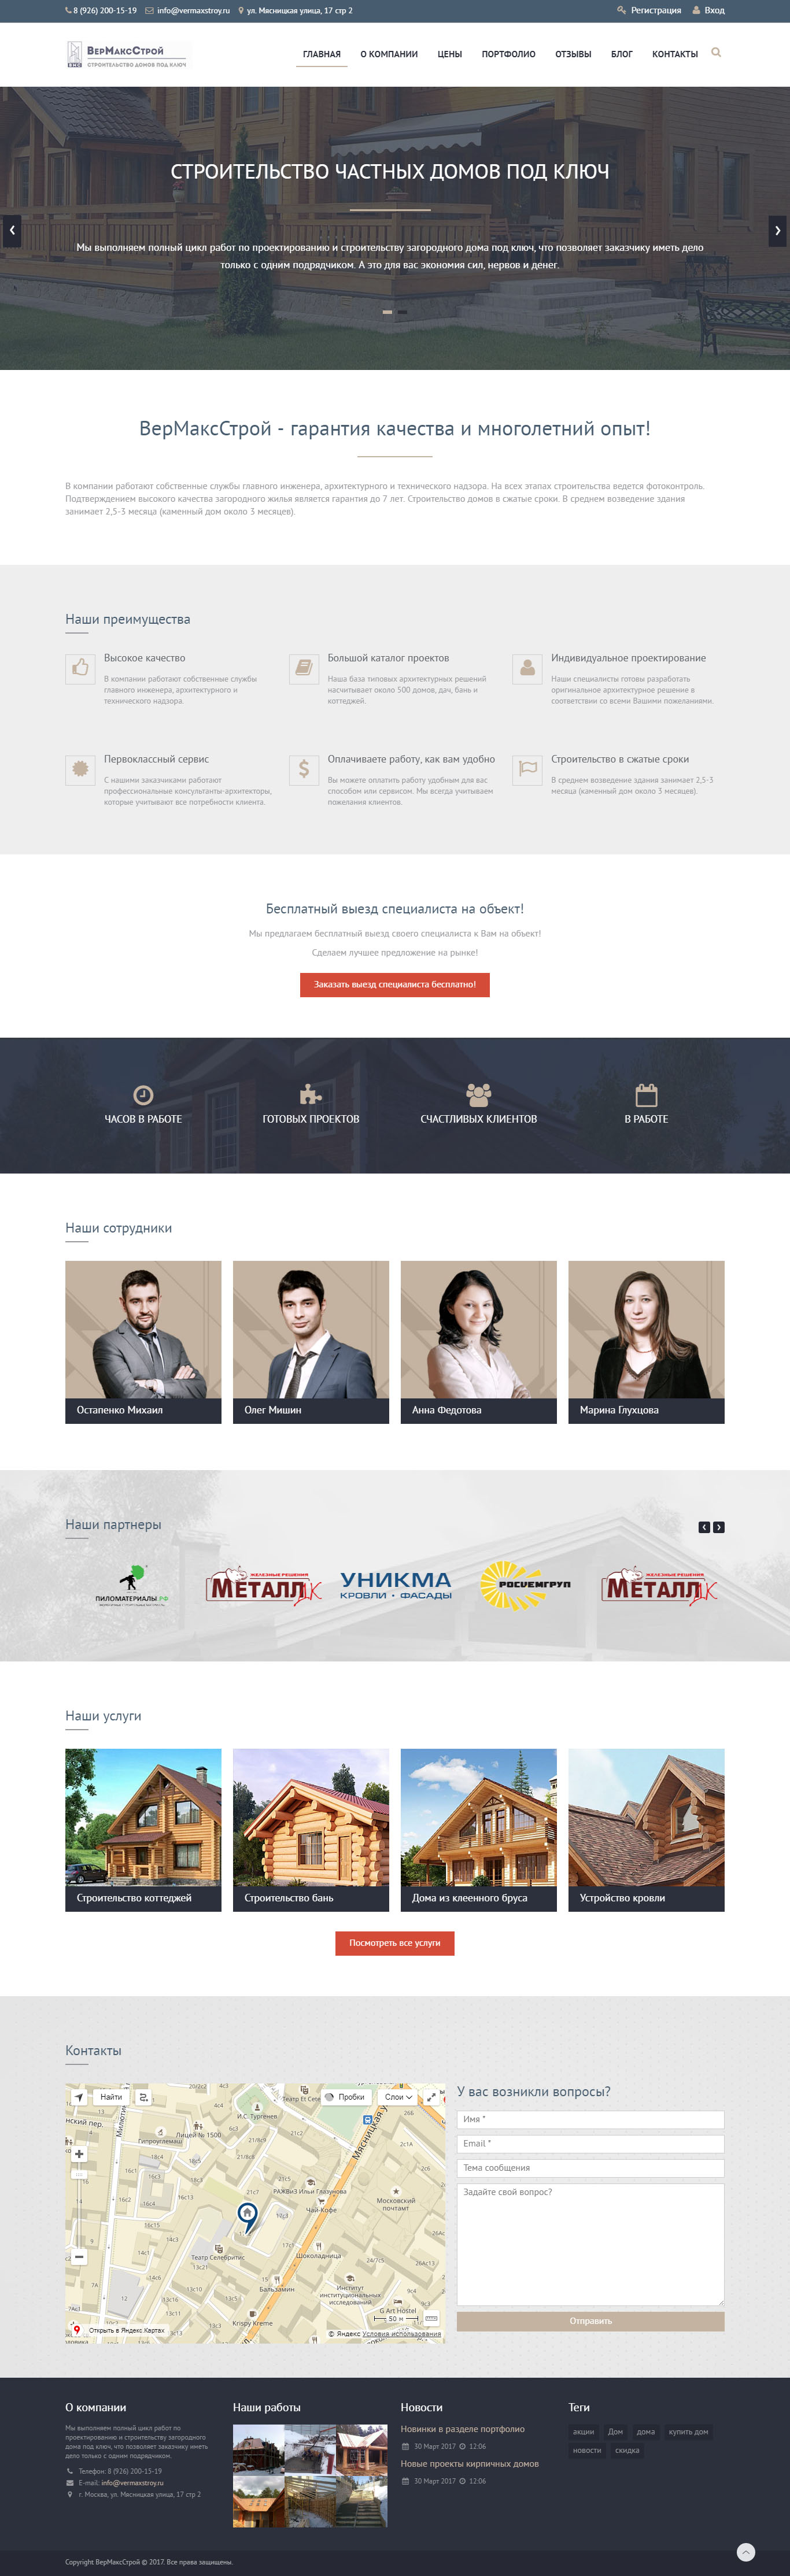 Корпоративный сайт Вермаксстрой